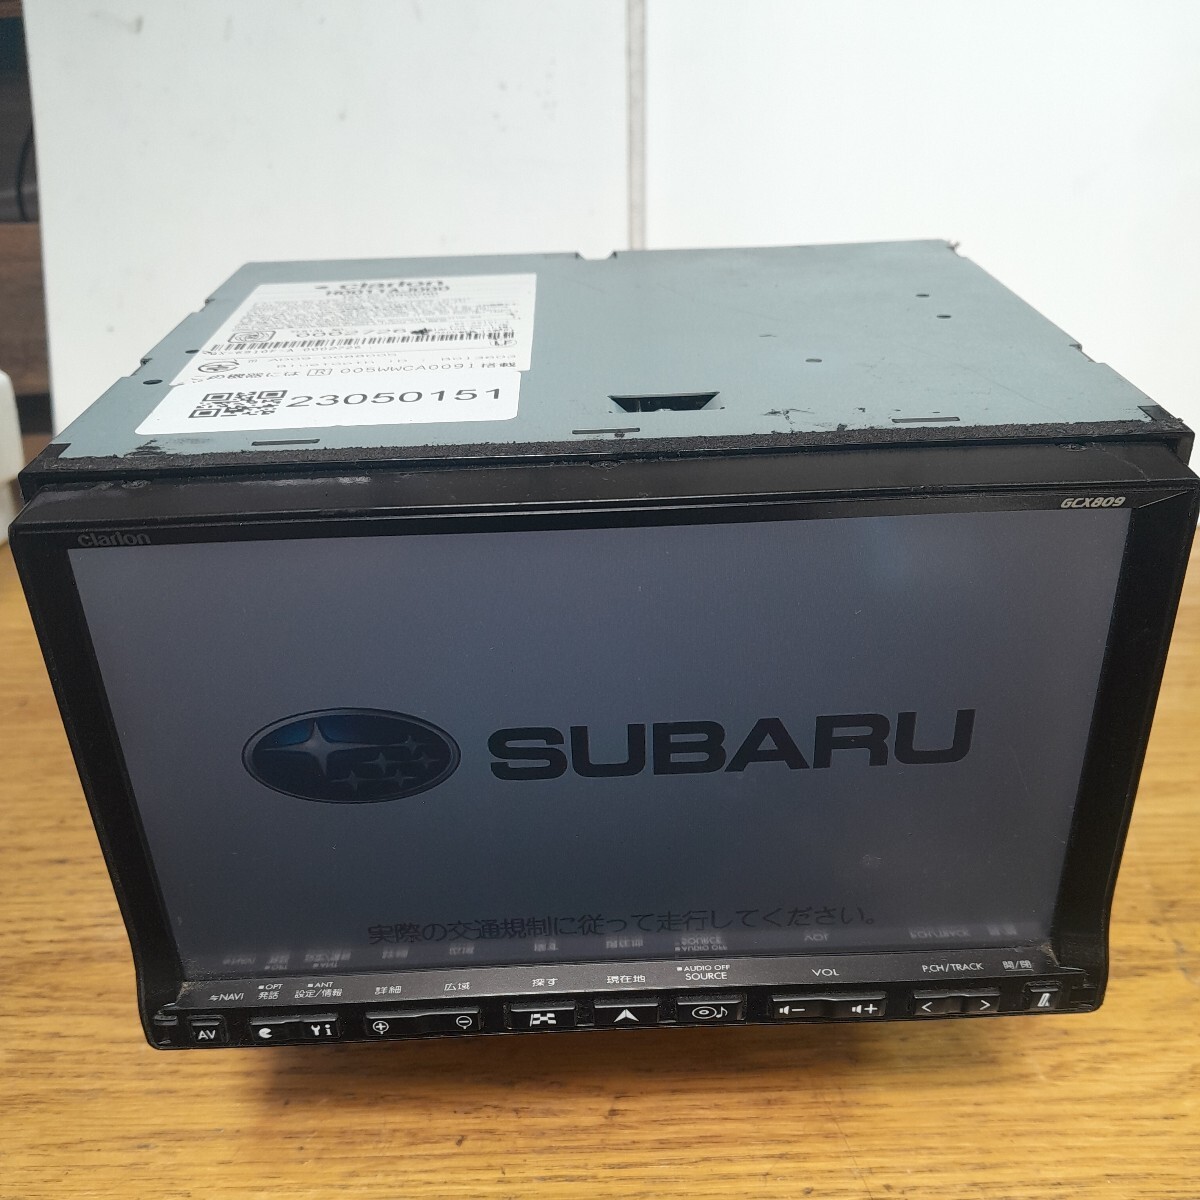  Subaru оригинальный Clarion * navi GCX809 карта данные Road Explorer HDD7.0( контрольный номер :23050151)